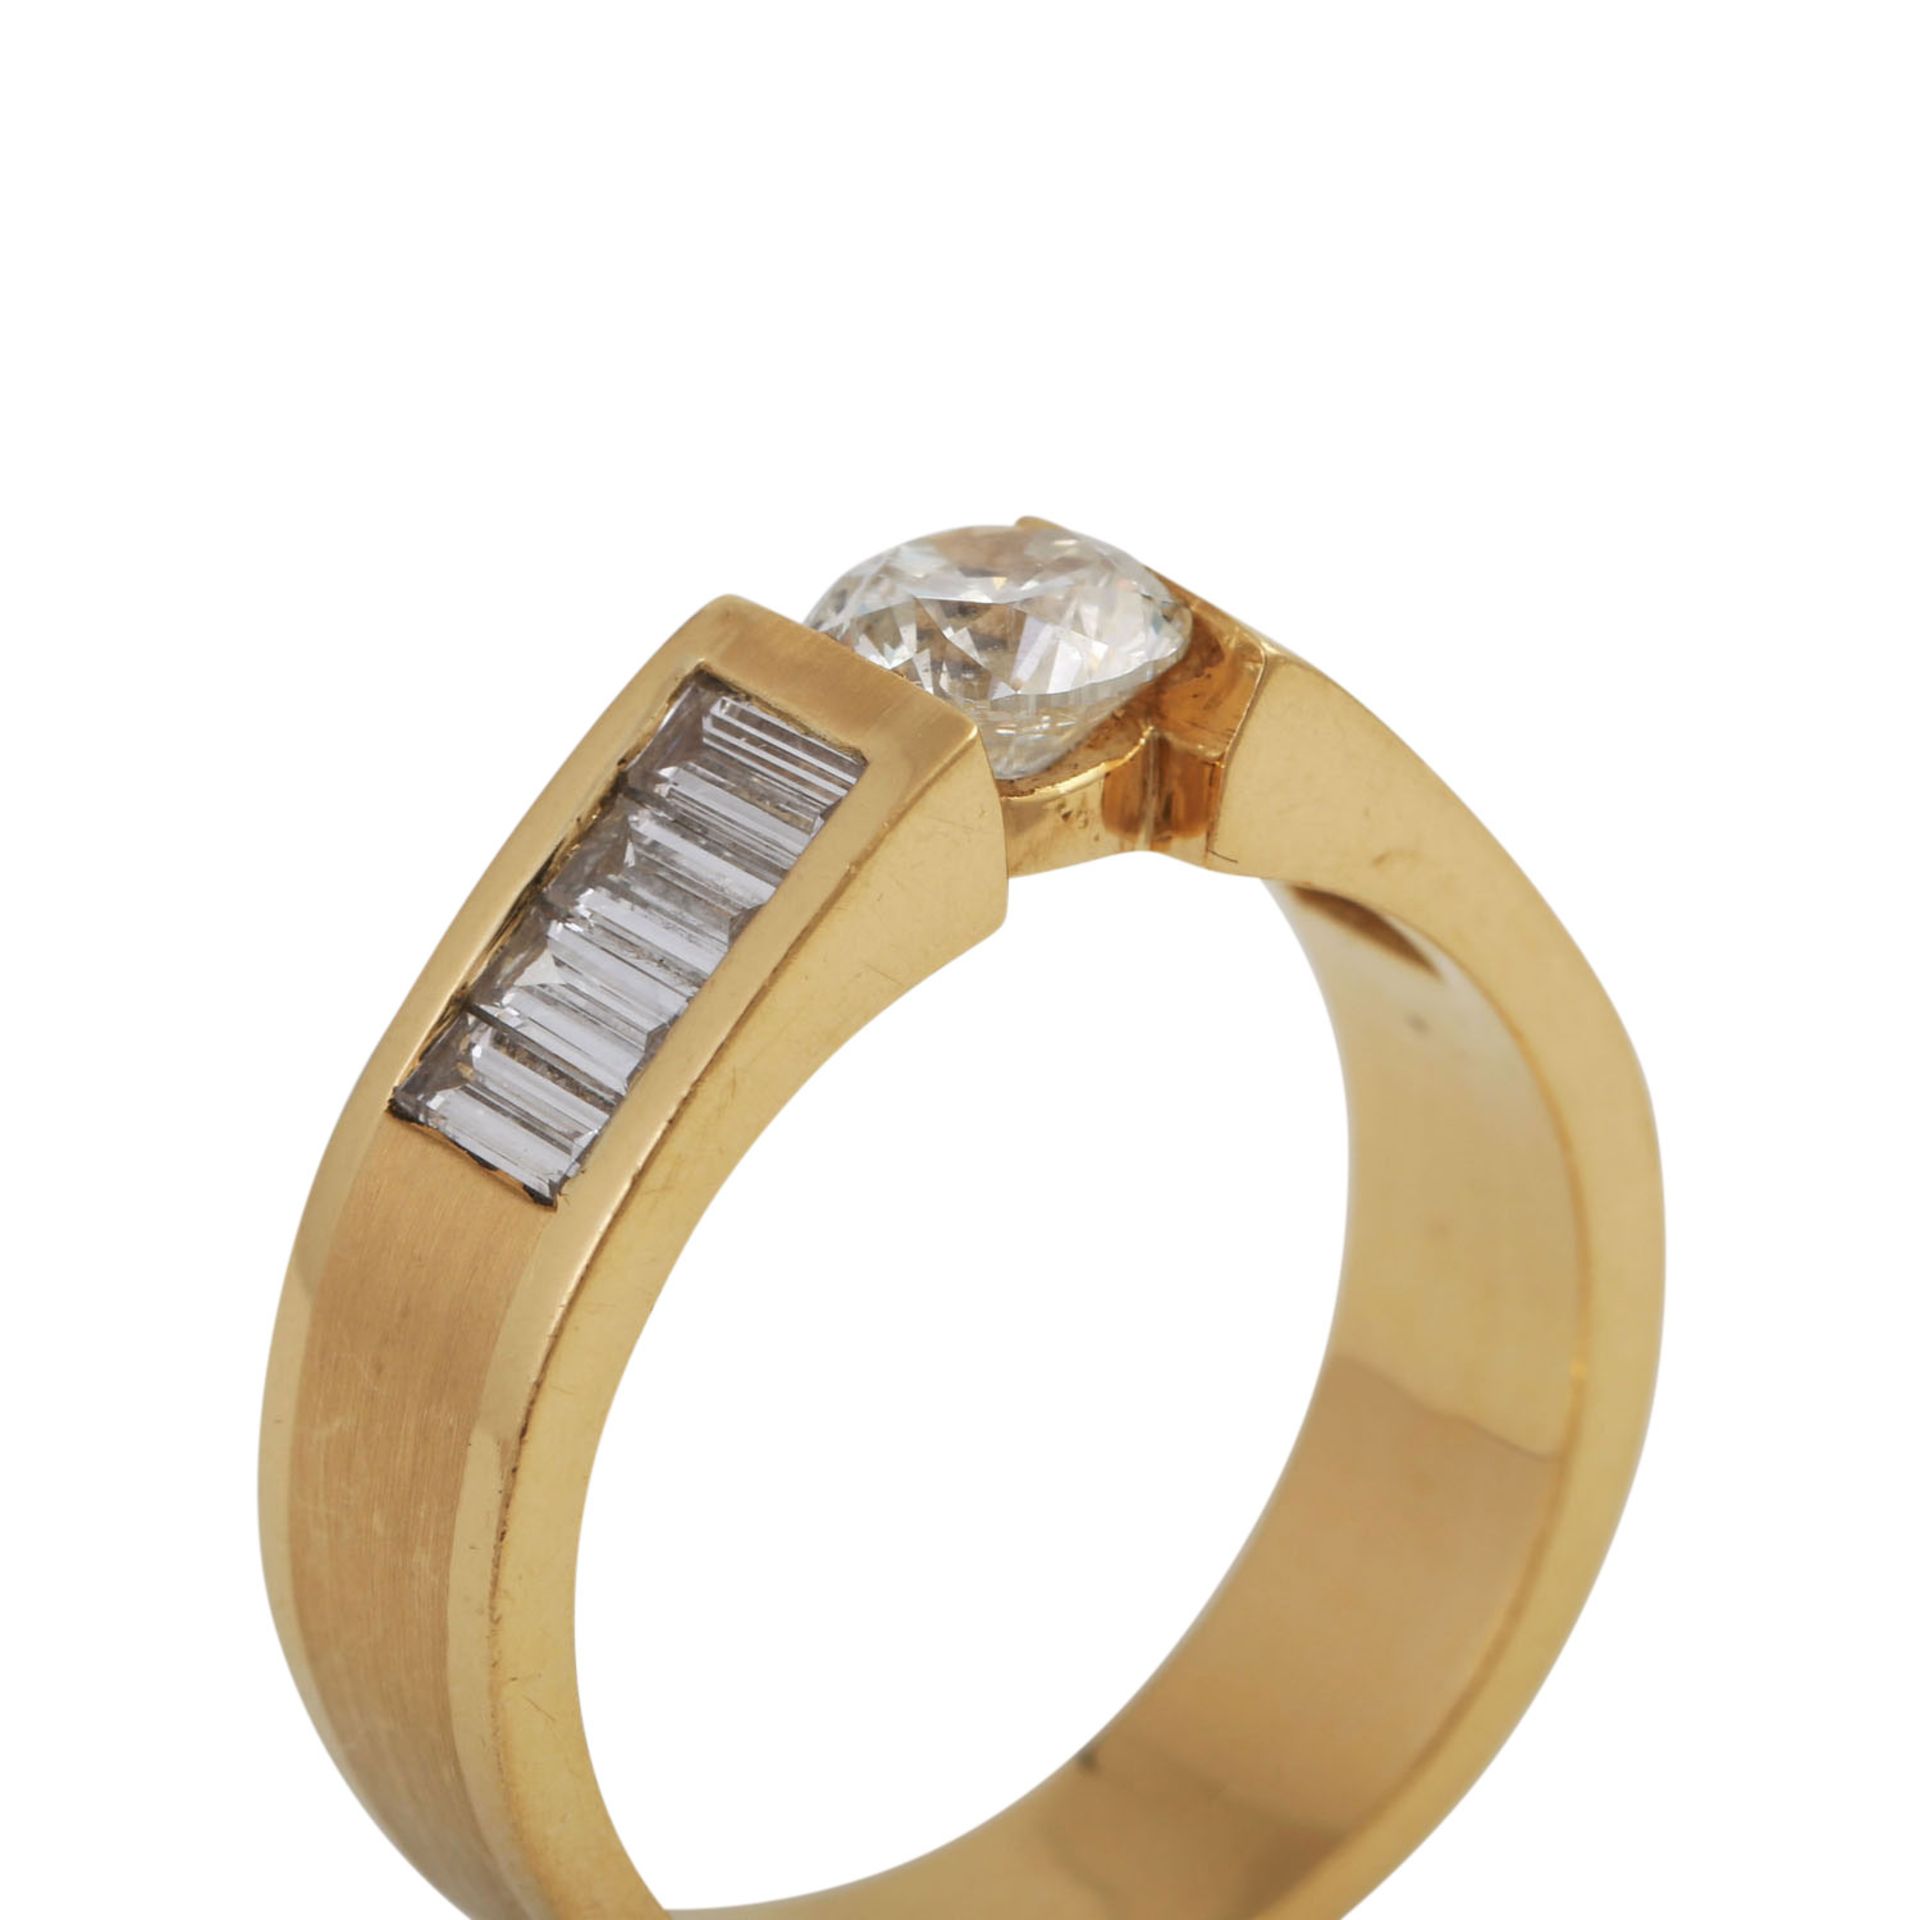 Ring mit Brillant, ca. 1 ct, LGW-GW (J-K)/P1flankiert von je 4 Diamanten im Baguetteschliff, zus. - Bild 5 aus 5